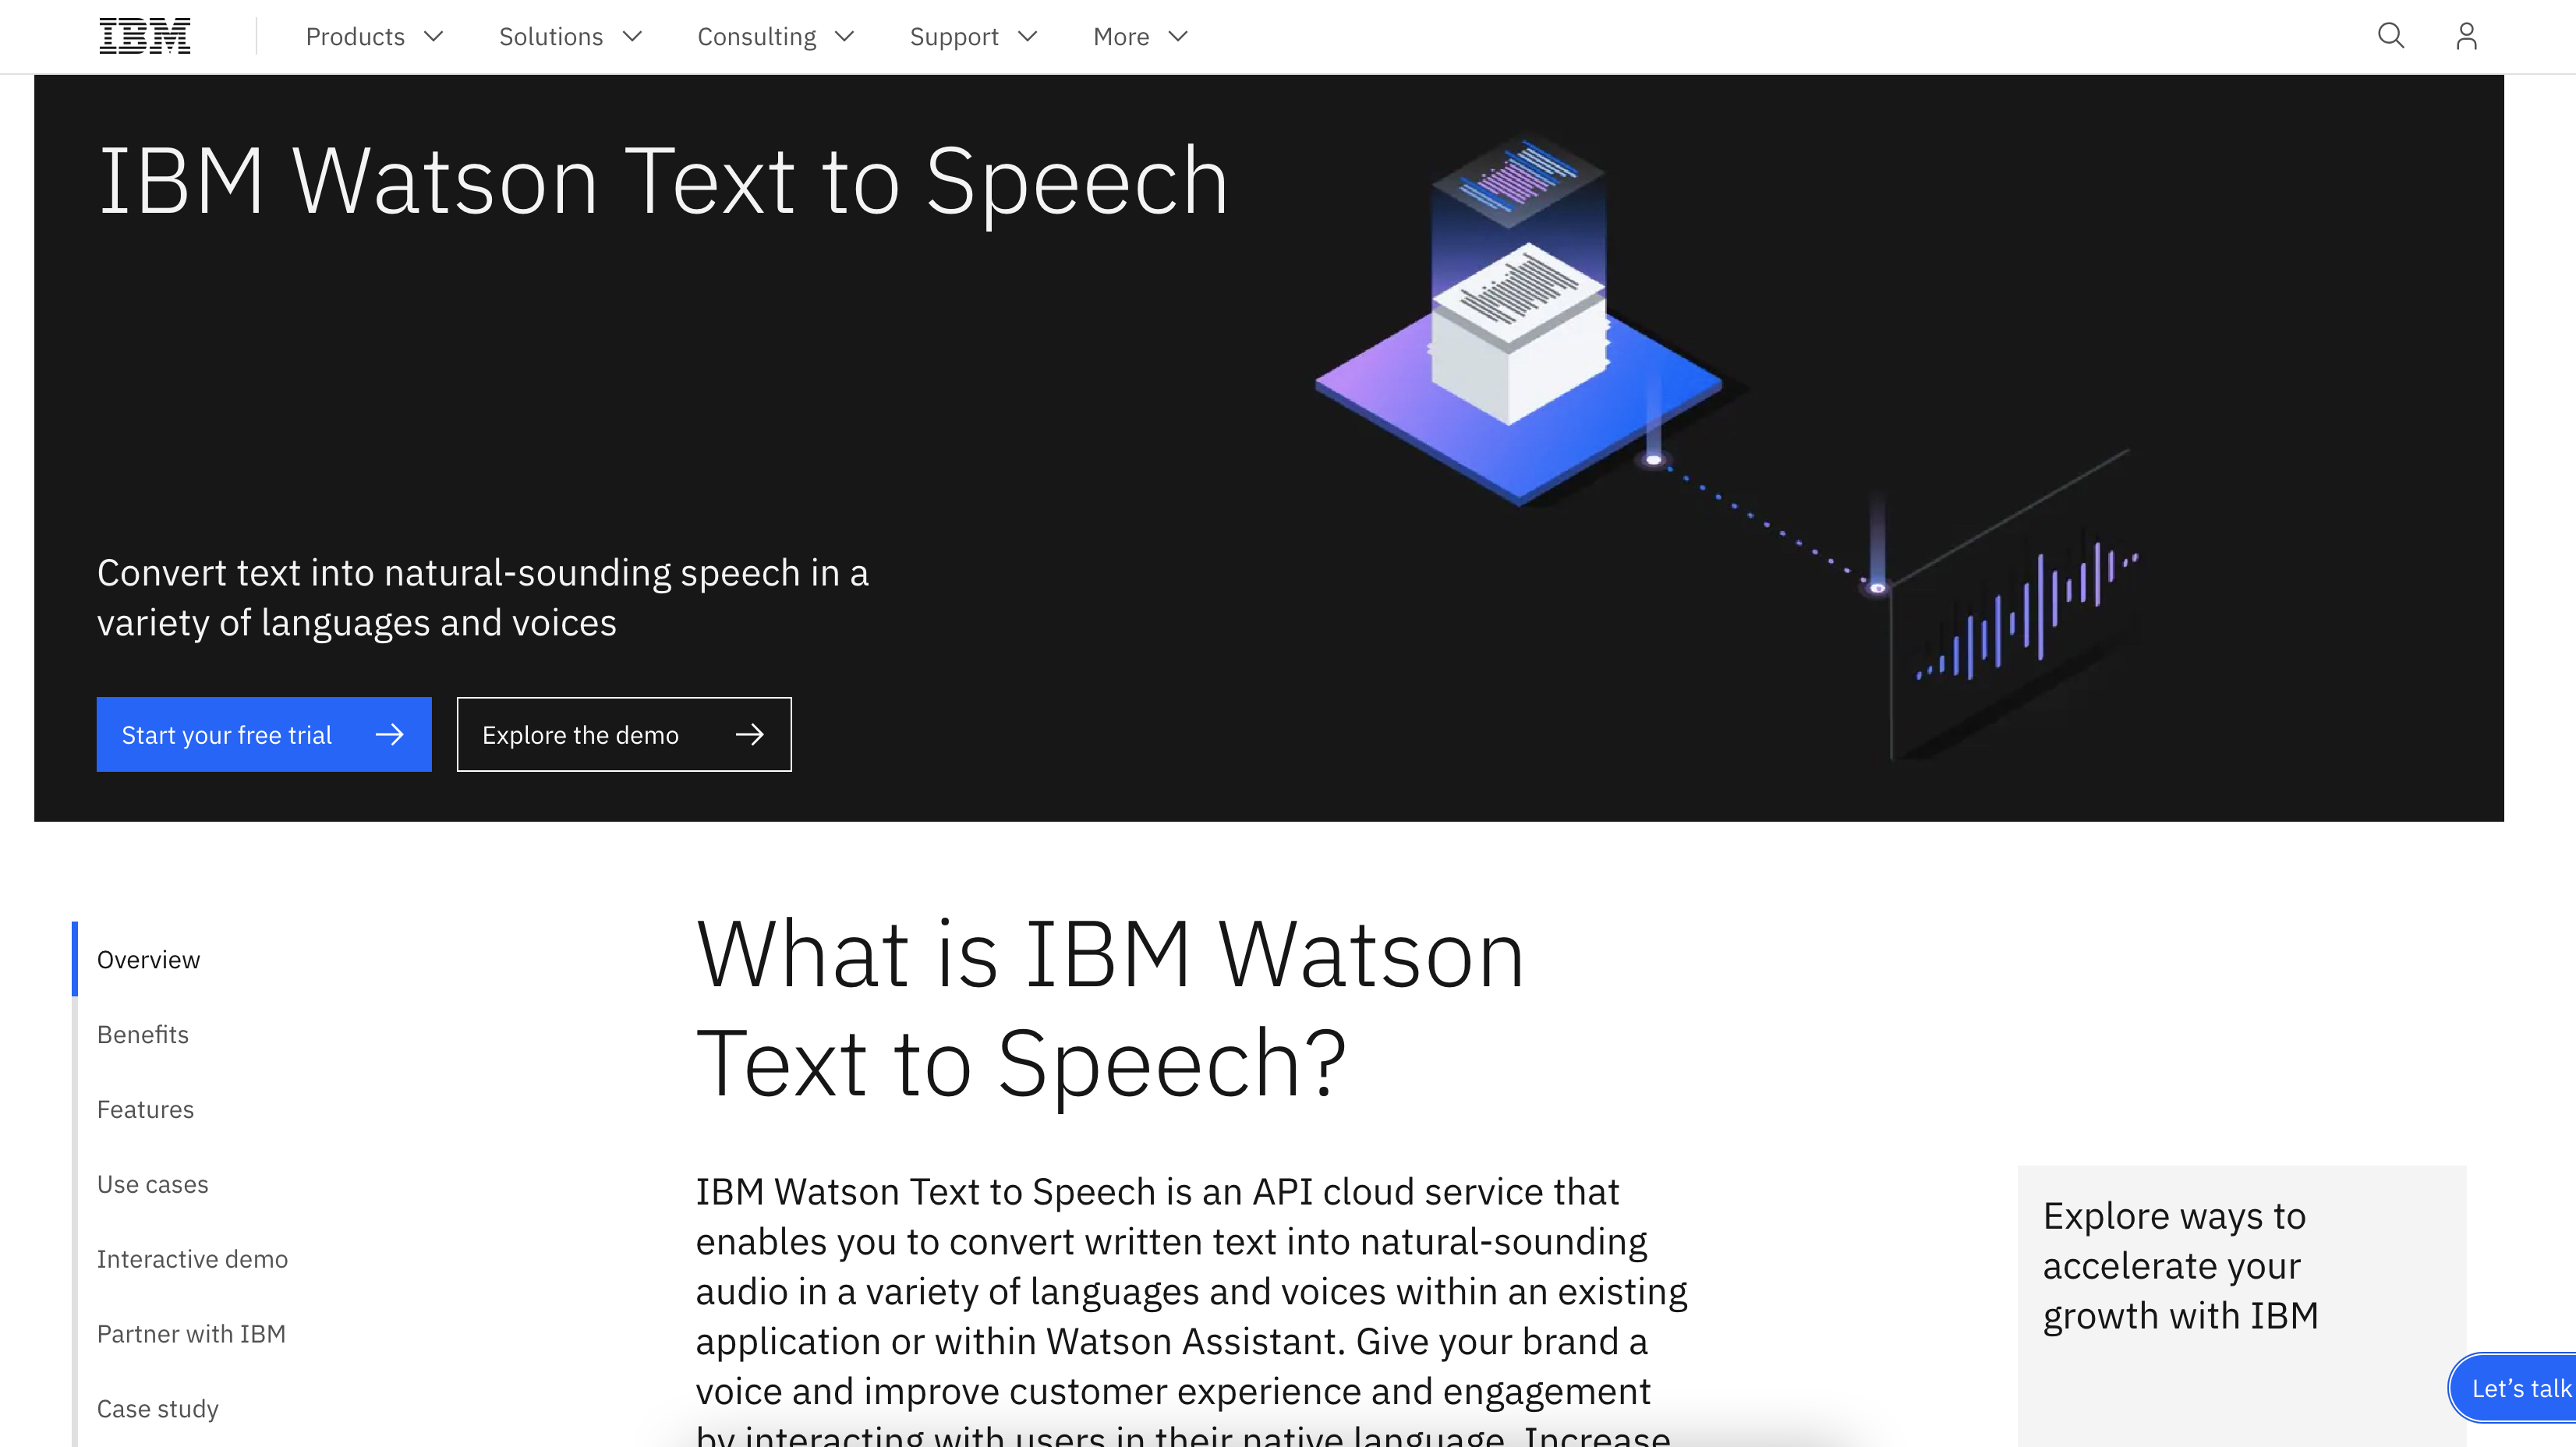 IBM Watson Text to Speech - trang web chuyển văn bản thành giọng nói